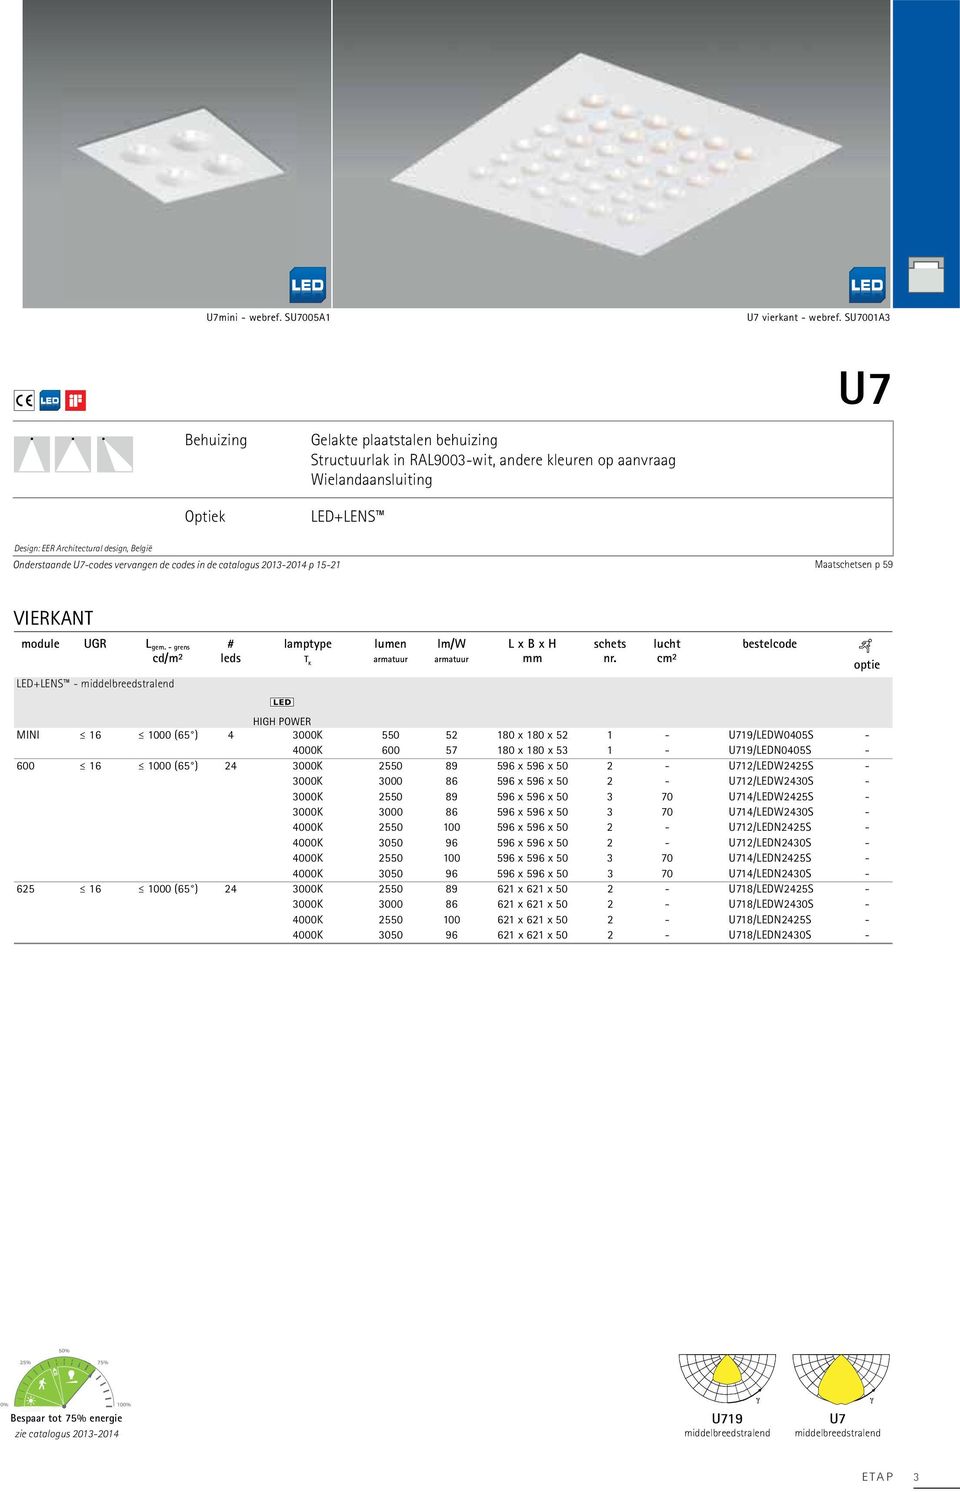 U7-codes vervangen de codes in de catalogus 2013-2014 p 15-21 Maatschetsen p 59 VIERKANT module UGR Lgem.